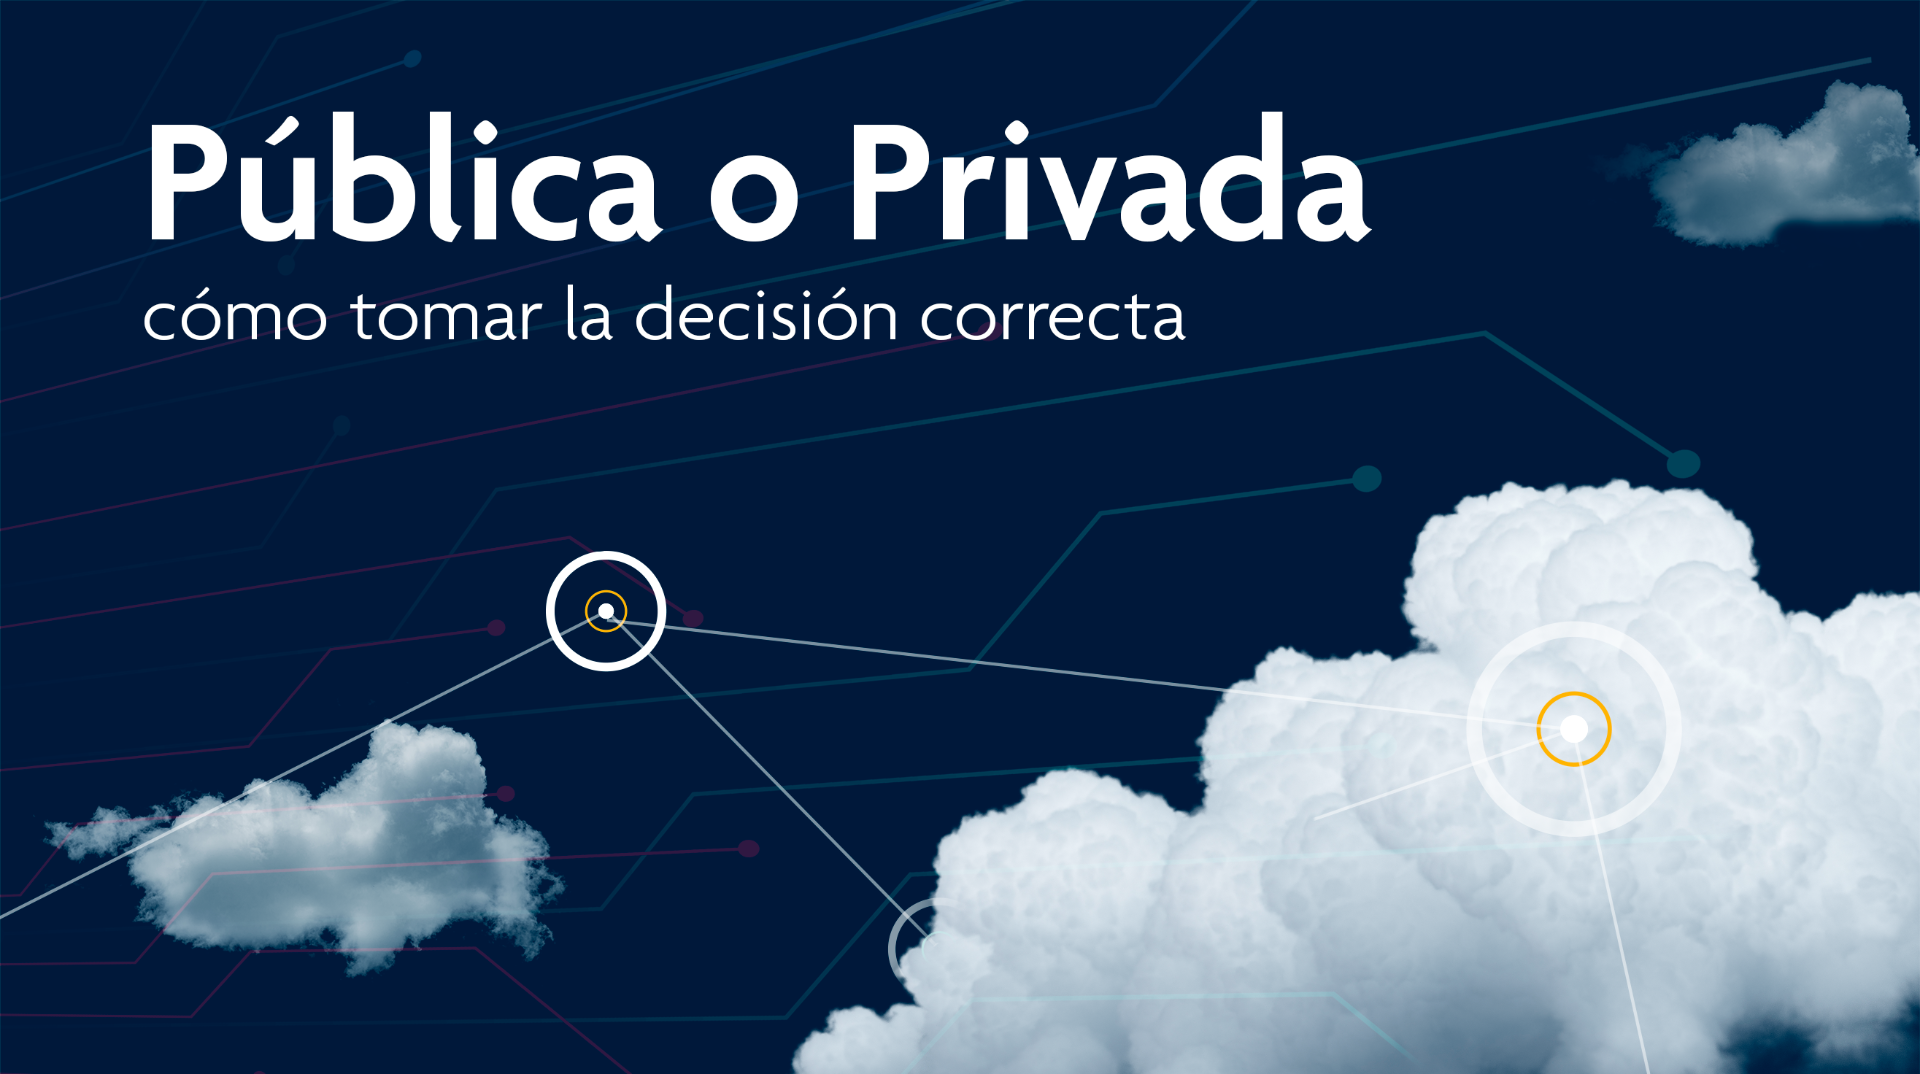 SAP Cloud Pública o Privada: cómo tomar la decisión correcta